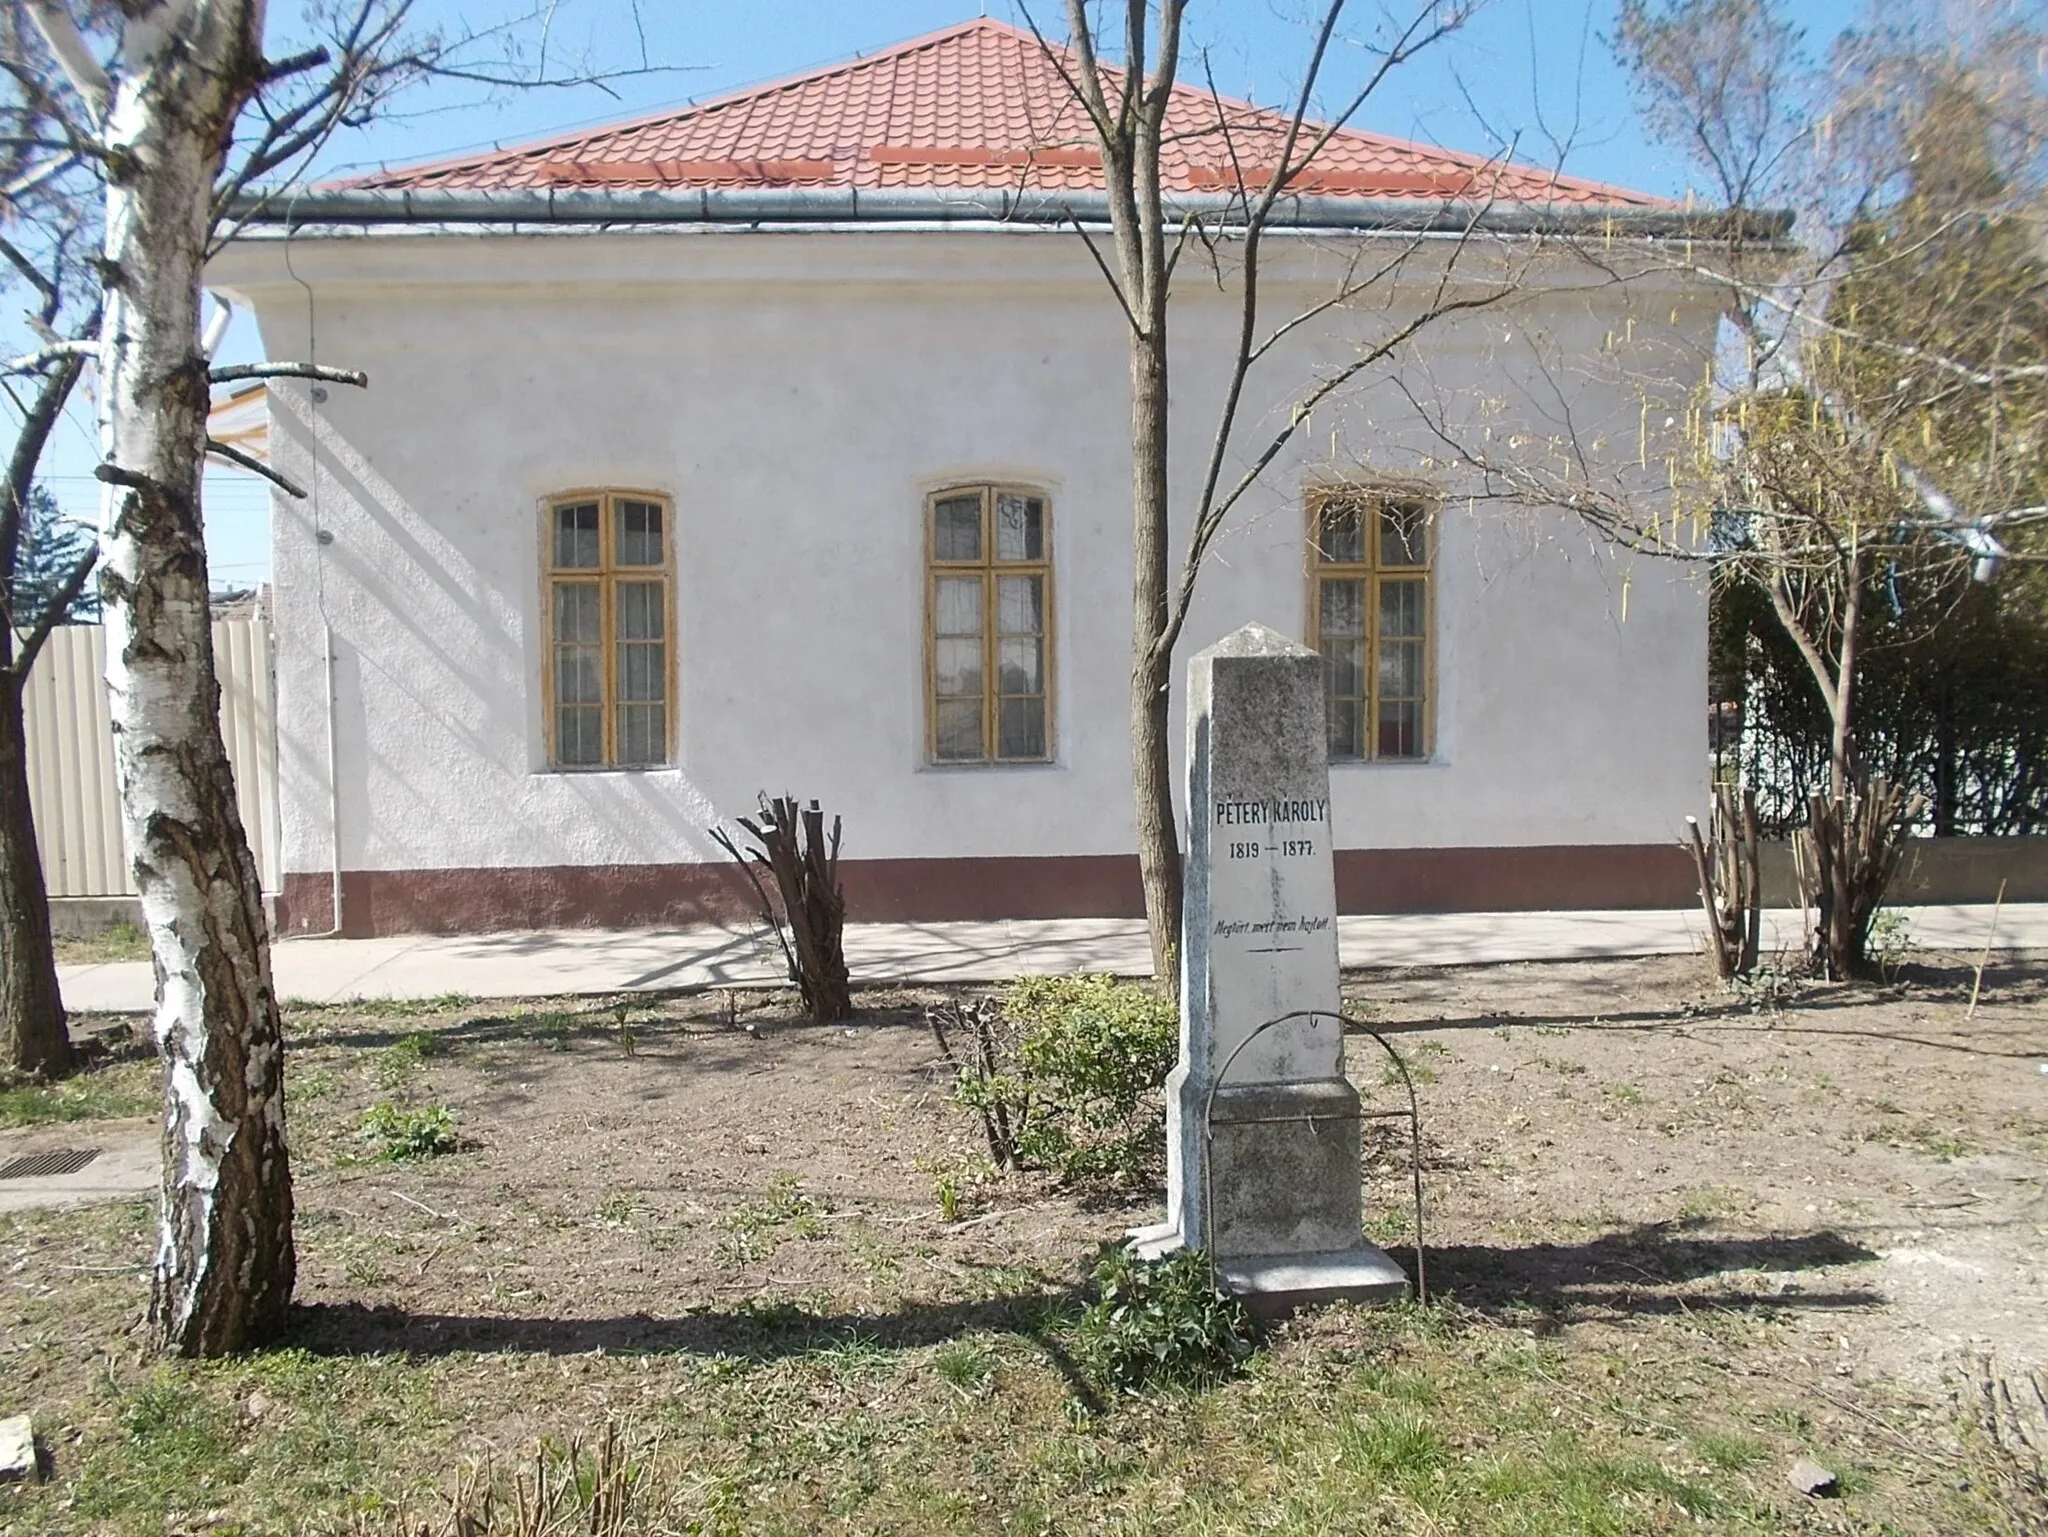 Photo showing: : Gravestone of Károly Pétery - Kálvin square, Mezőtúr, Jász-Nagykun-Szolnok County, Hungary.